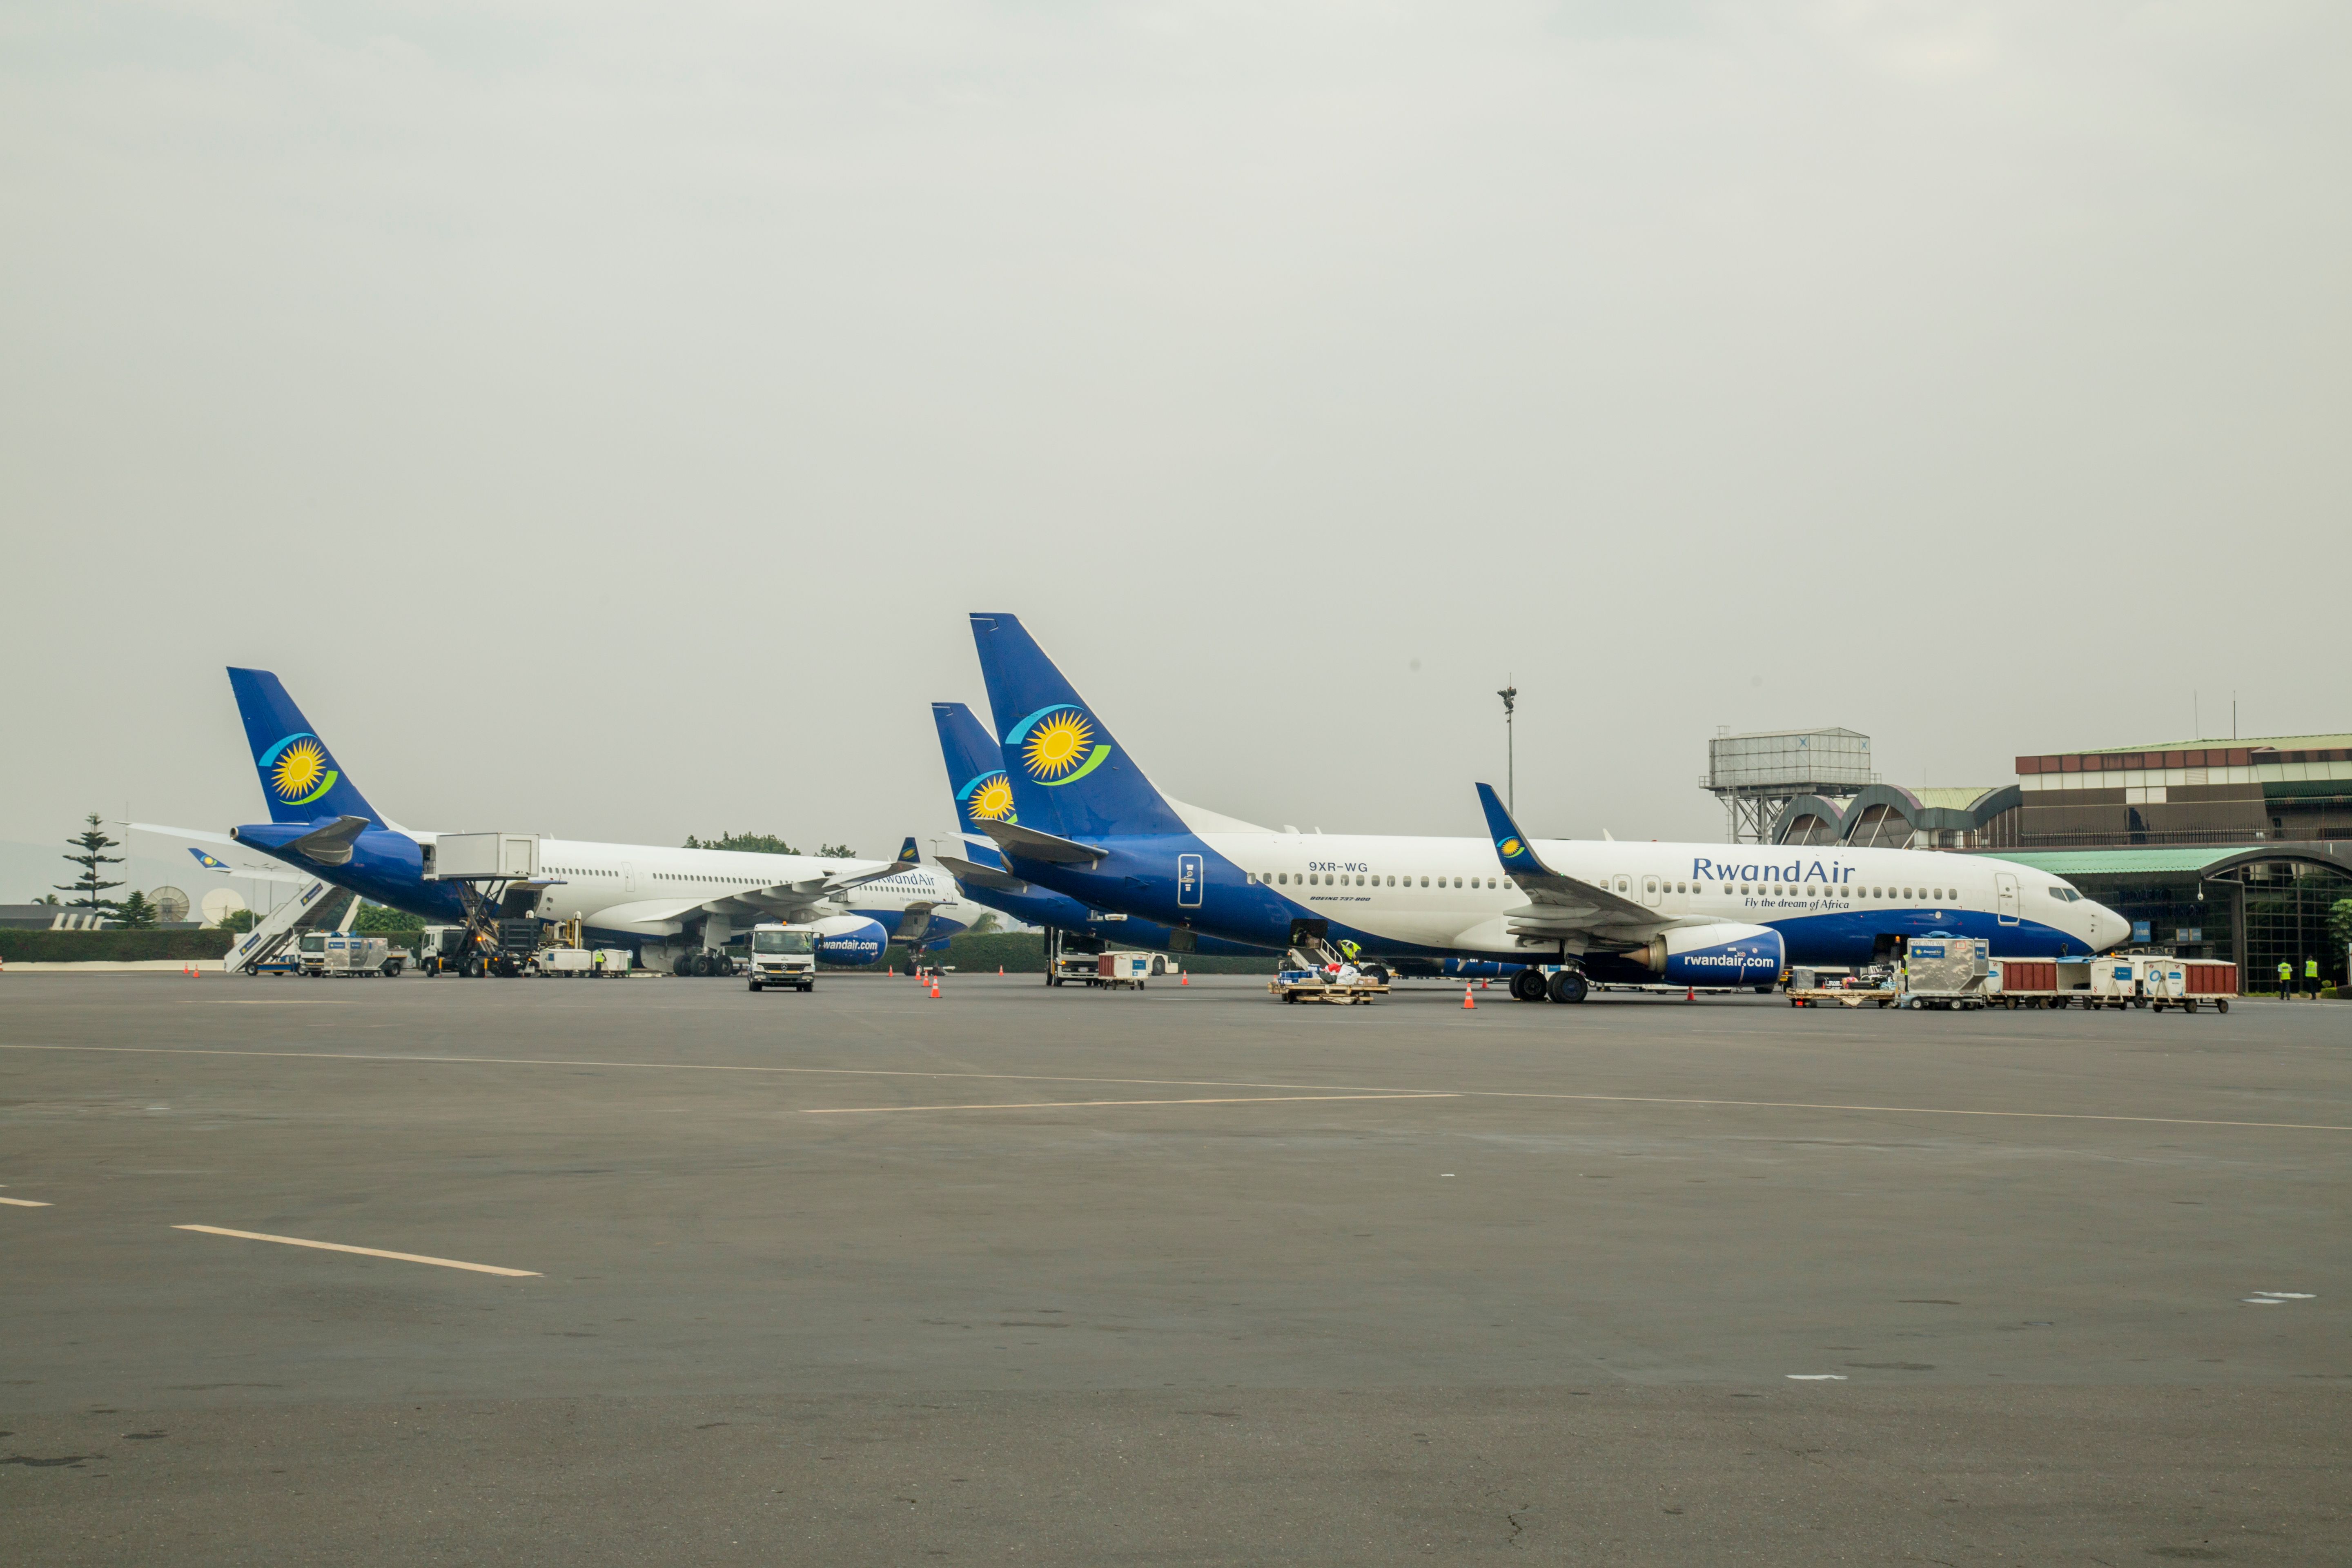 Several RwandAir aircraft parked